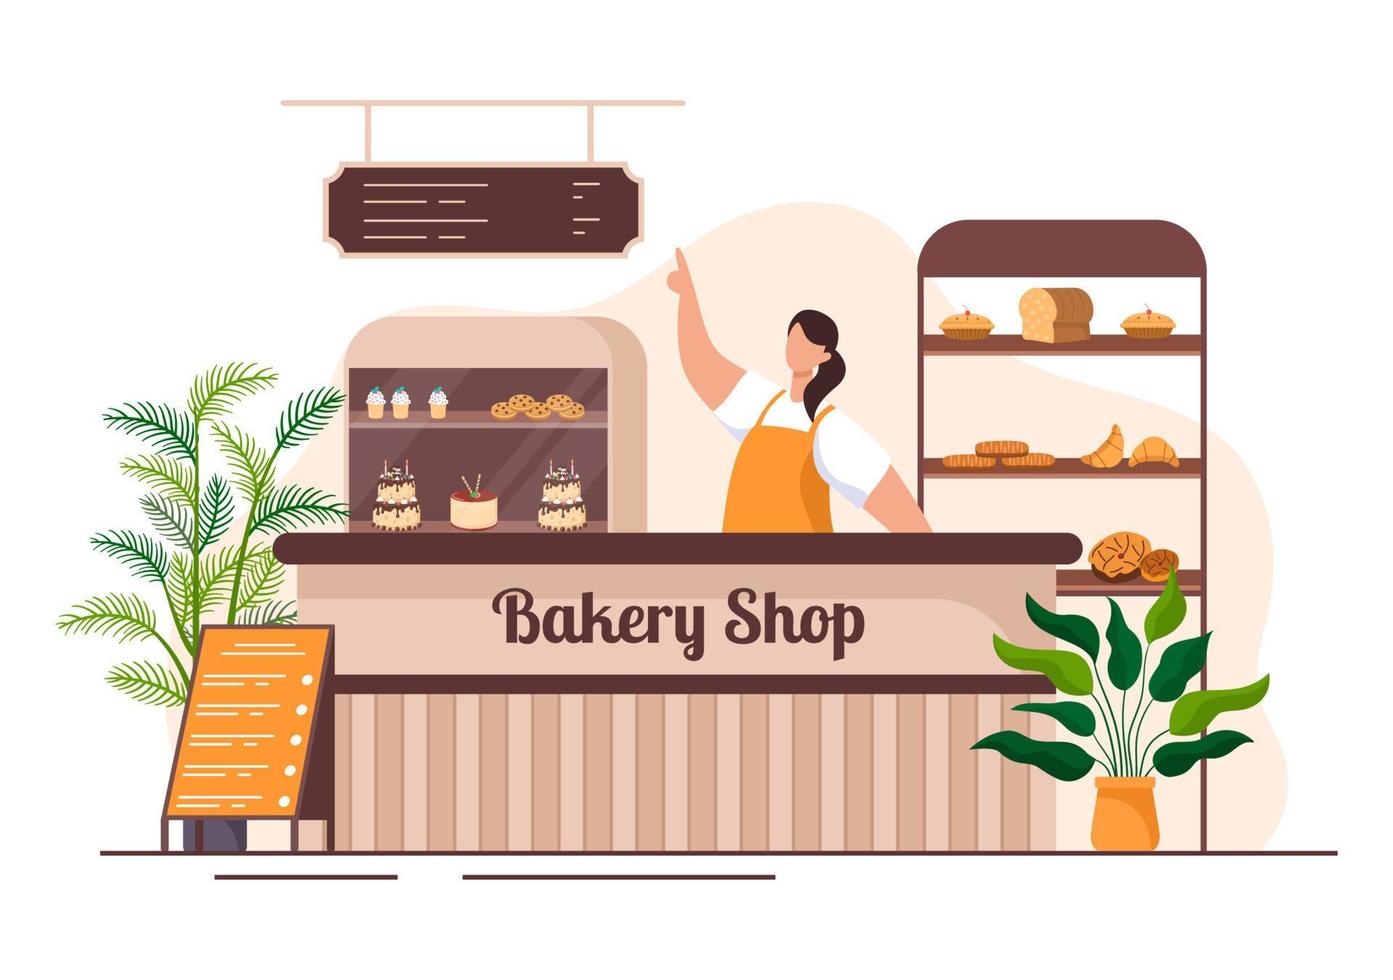 edificio de panadería que vende varios tipos de pan, como pan blanco, pastelería y otros, todos horneados en un fondo plano para ilustrar afiches vector